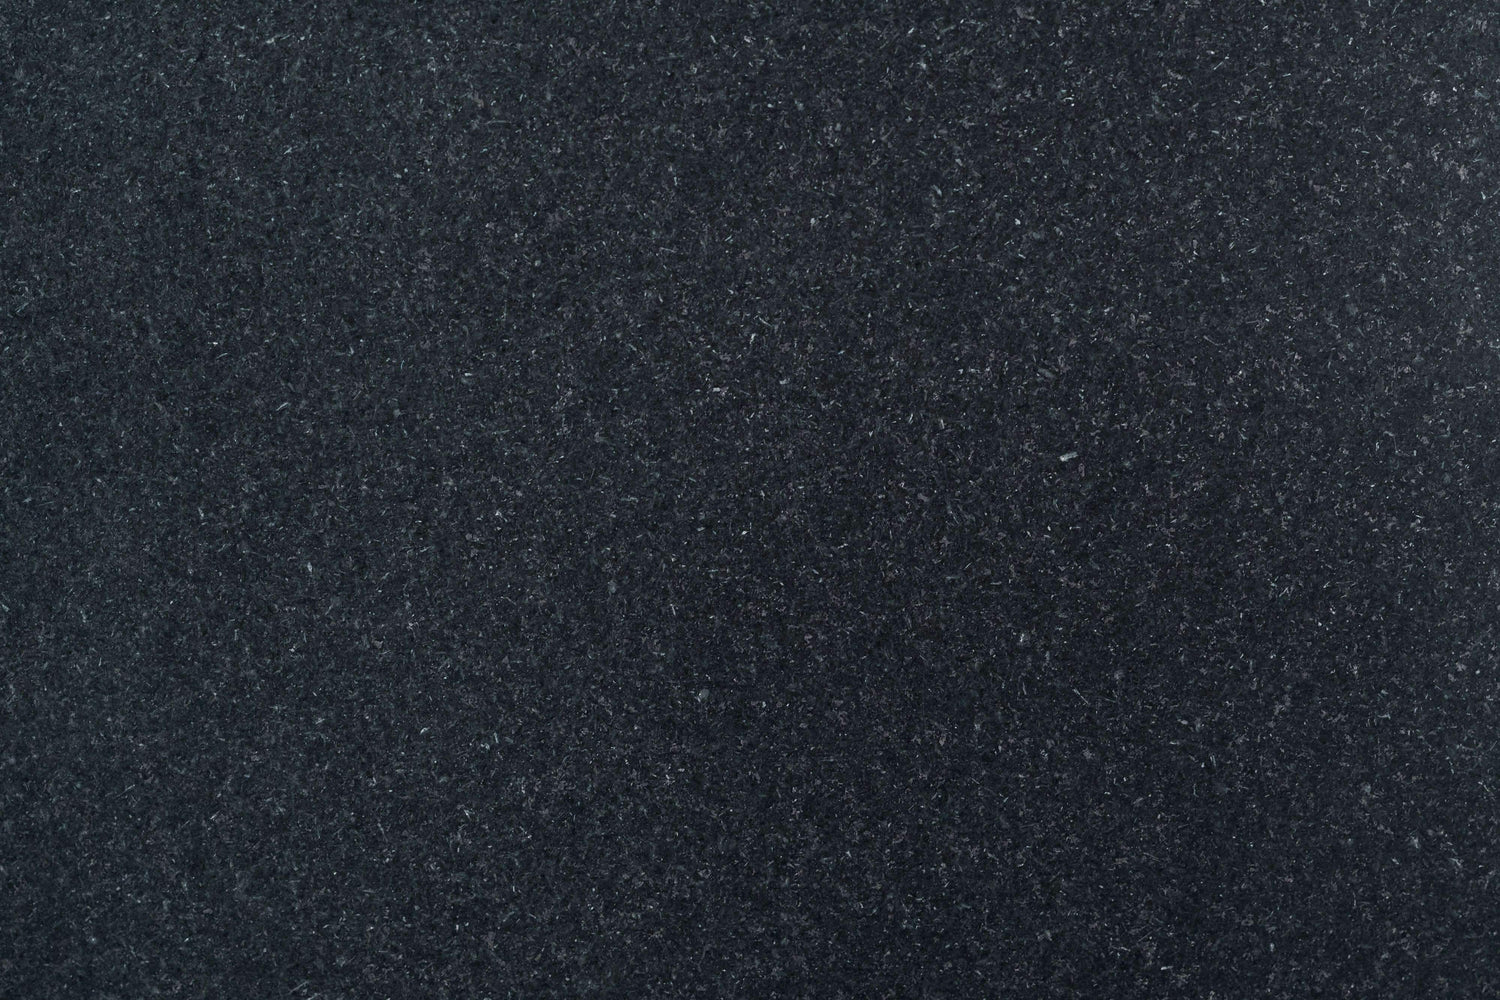 Full Tile Sample - Absolute Black Granite Tile - 12" x 24" x 1/2" Honed